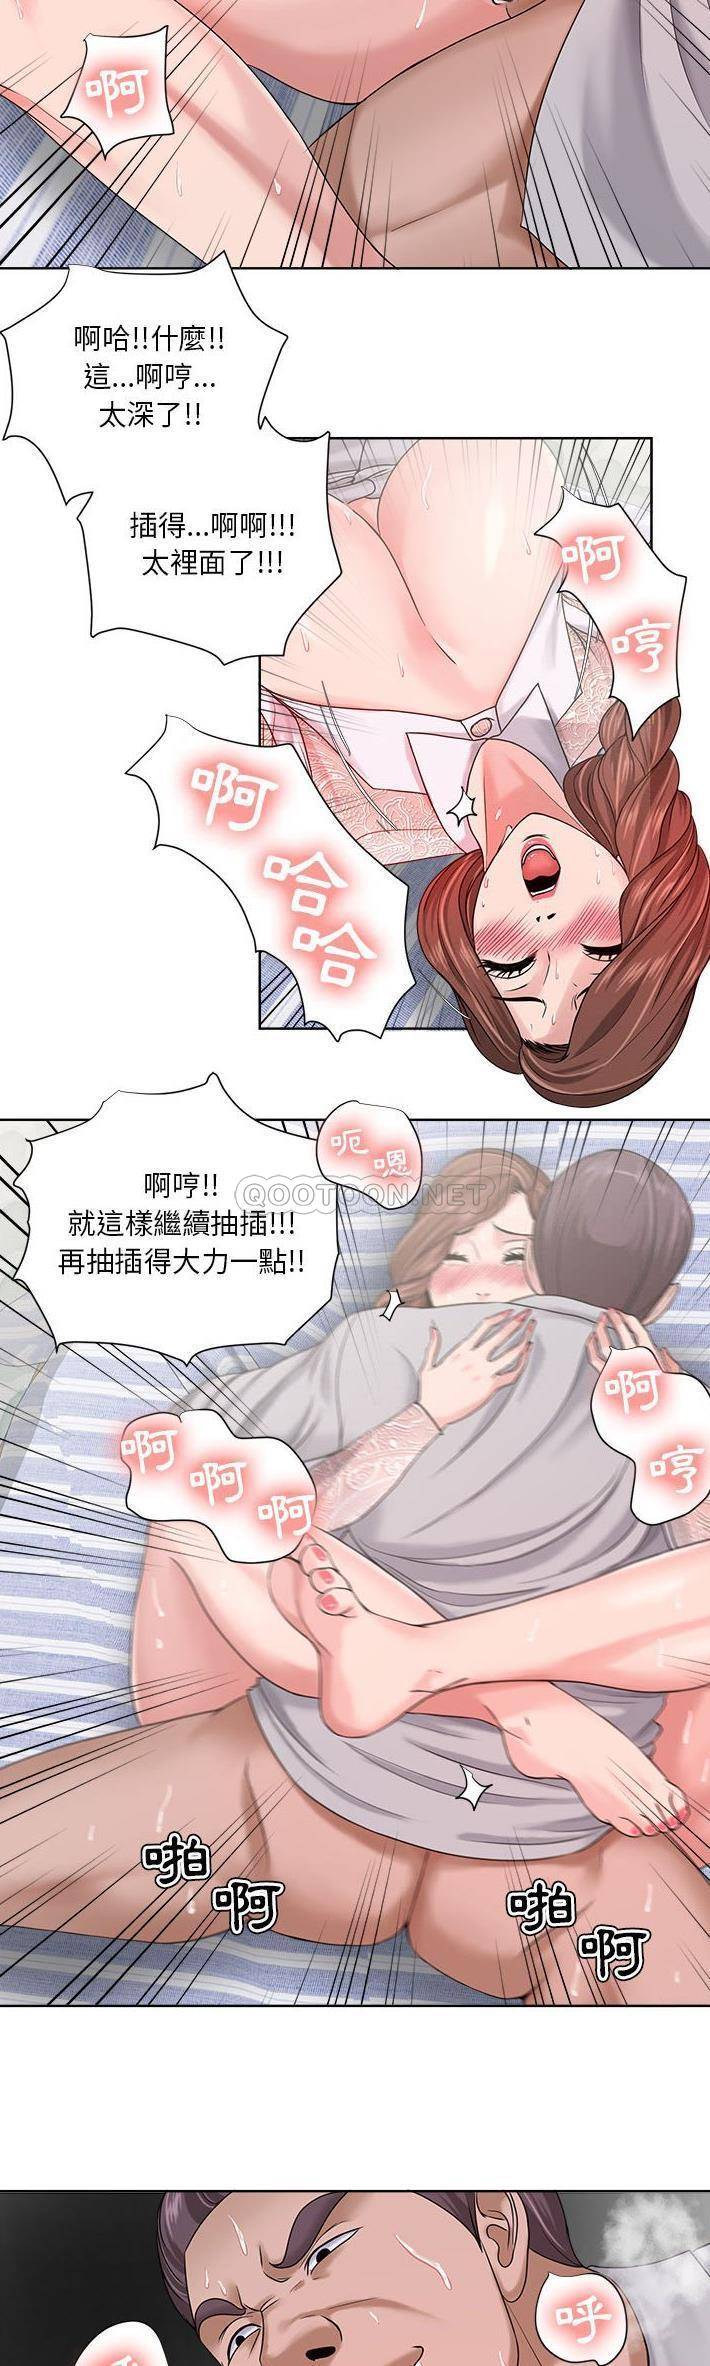 韩国污漫画 女人專門為難女人(女人的戰爭) 第13话 19